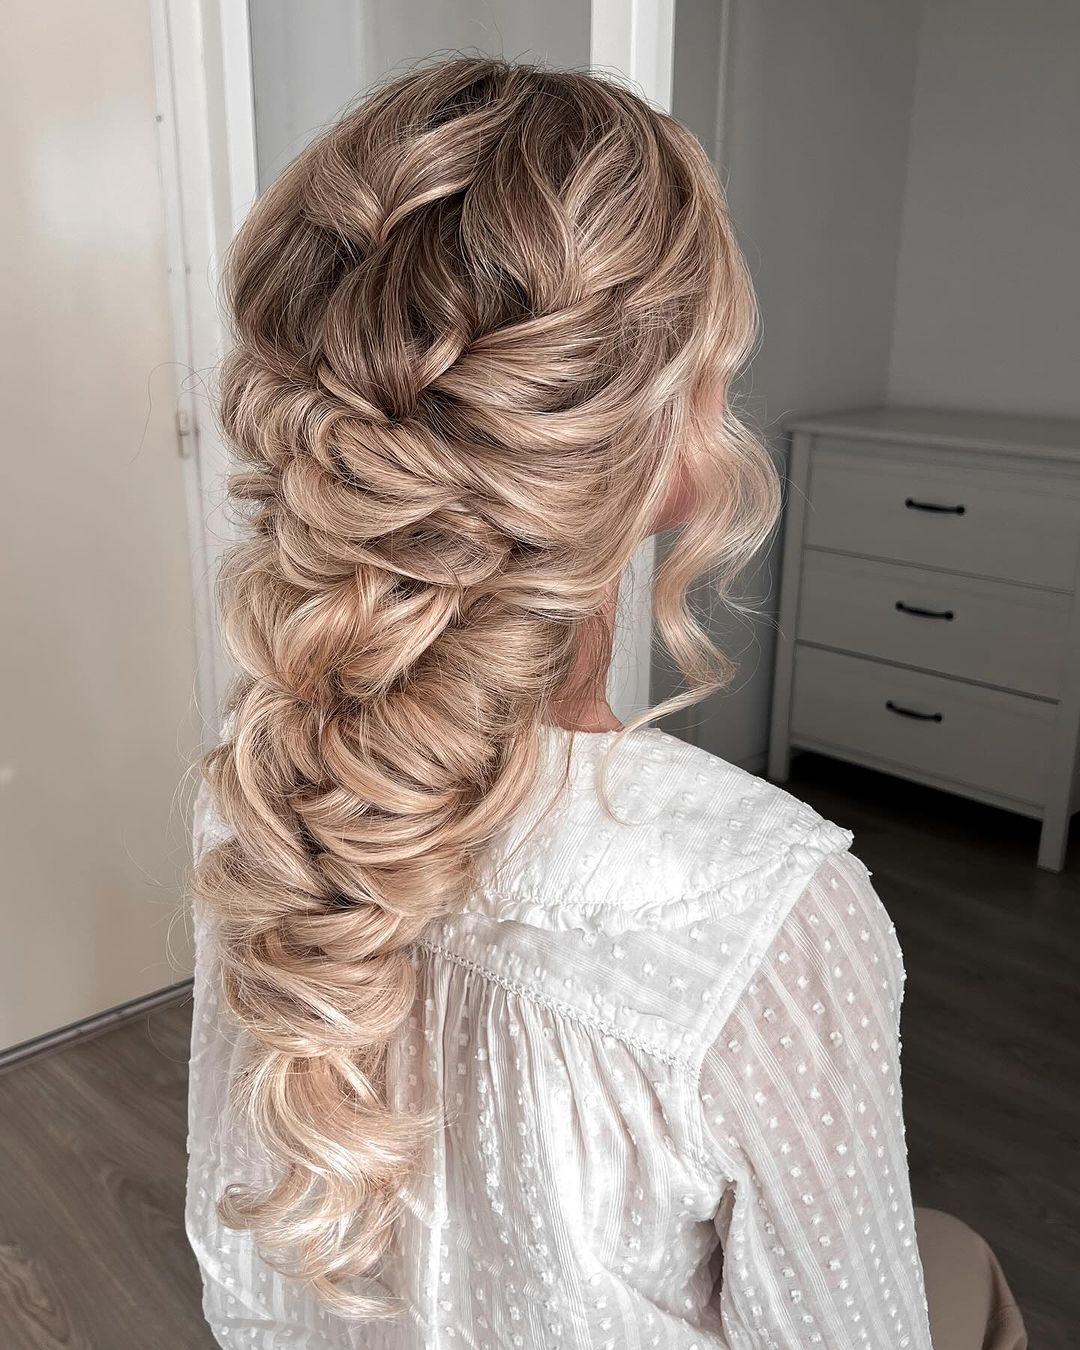 mermaid braid wedding hairstyle